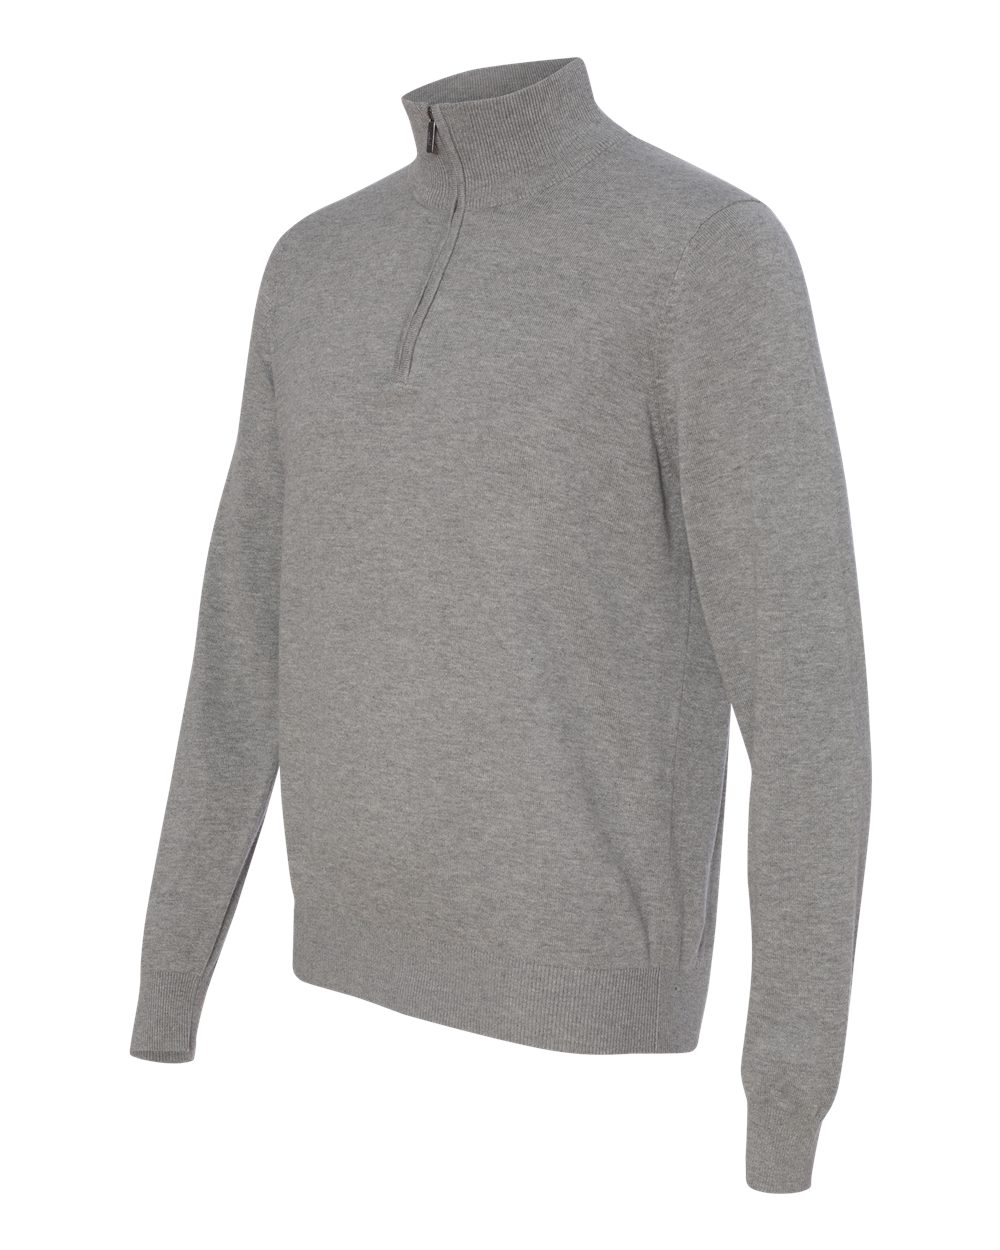 Van Heusen - Quarter-Zip Sweater - 13VS005